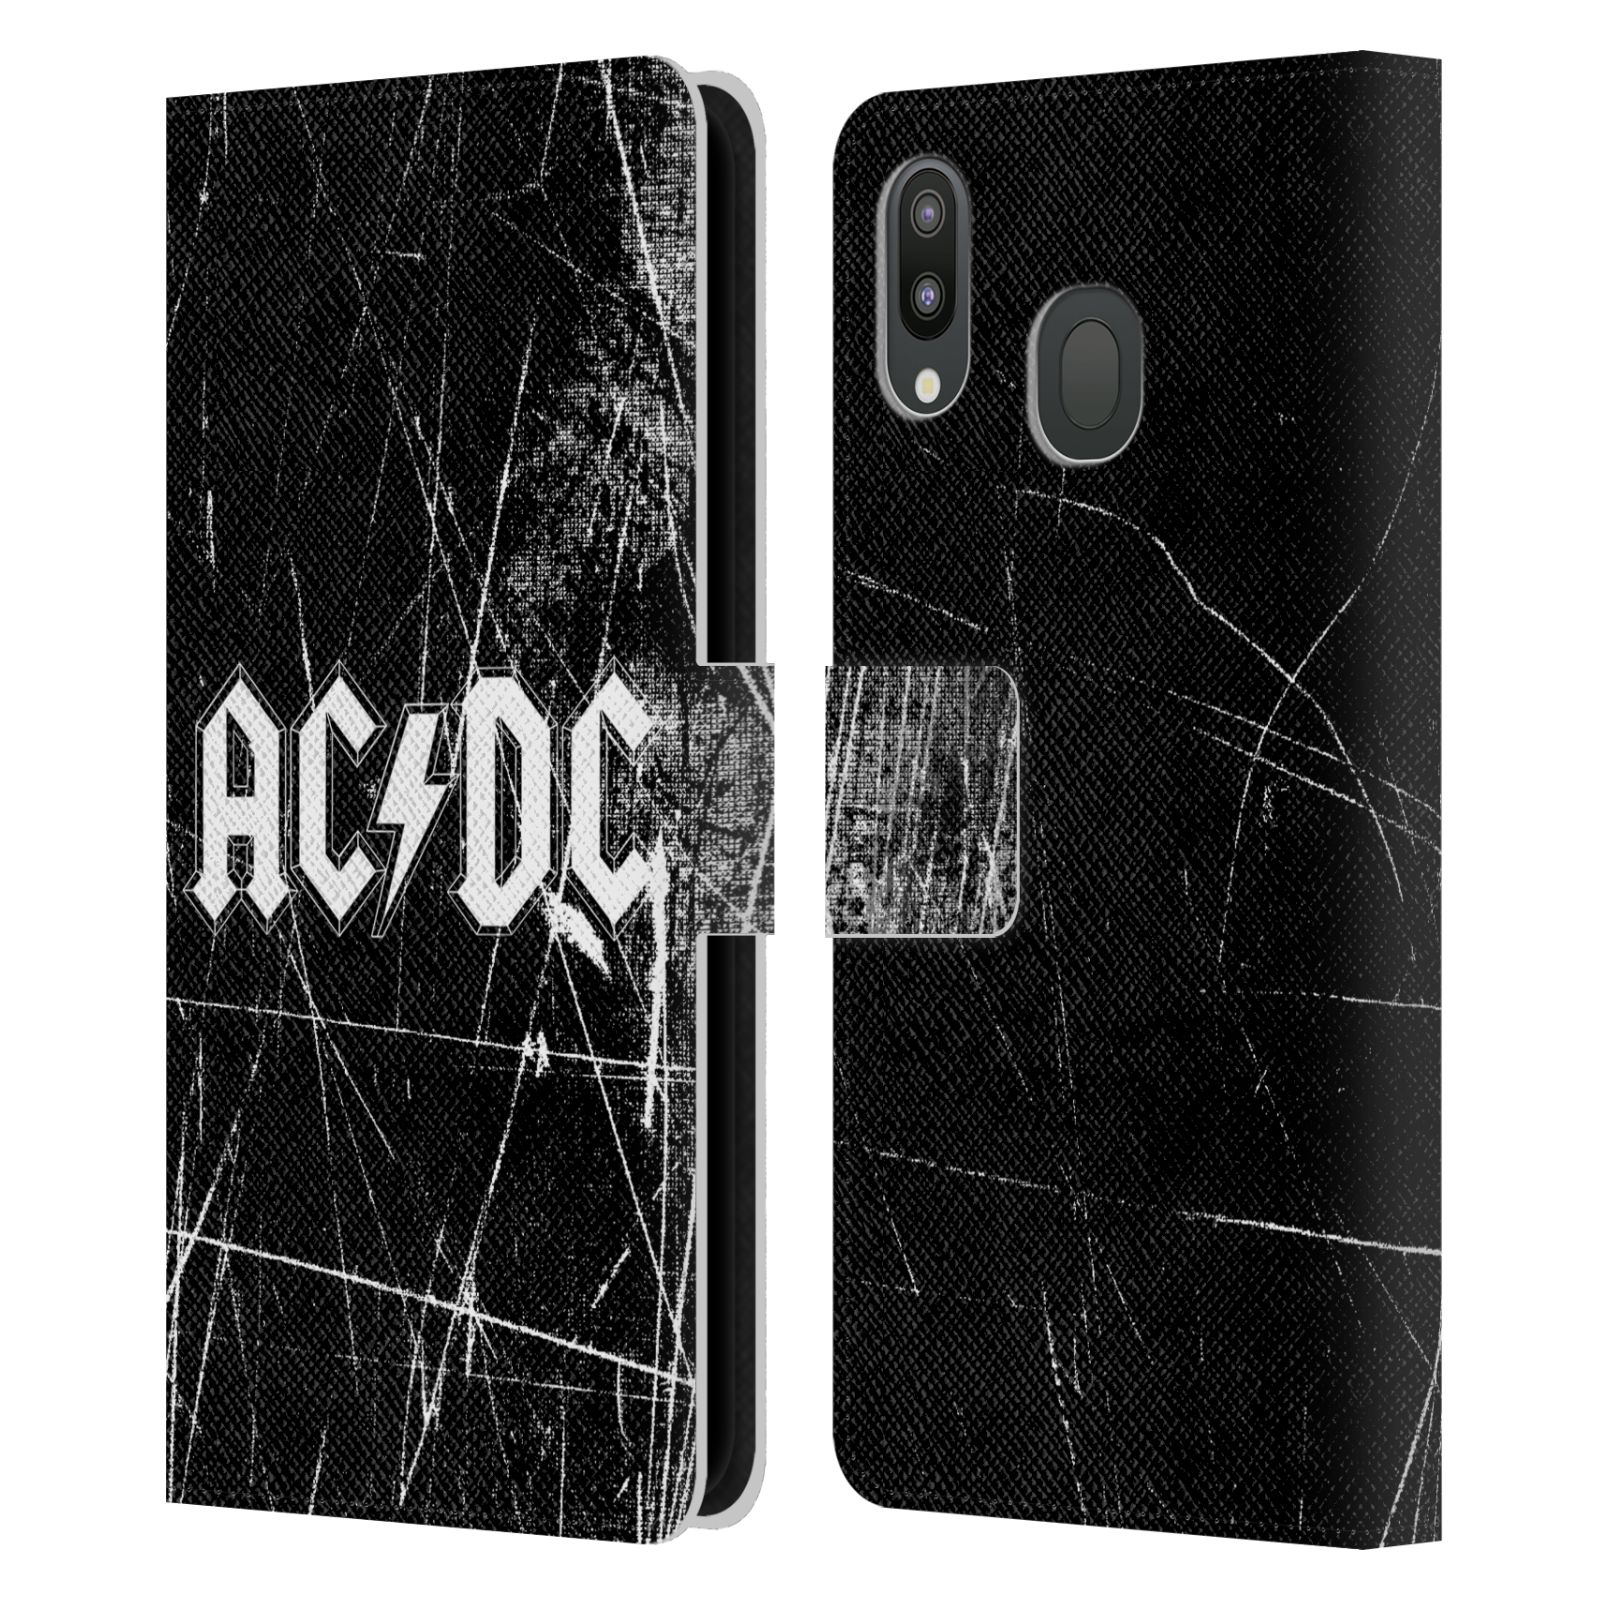 Pouzdro na mobil Samsung Galaxy M20 - HEAD CASE - Rocková skupin ACDC - černobílý nadpis